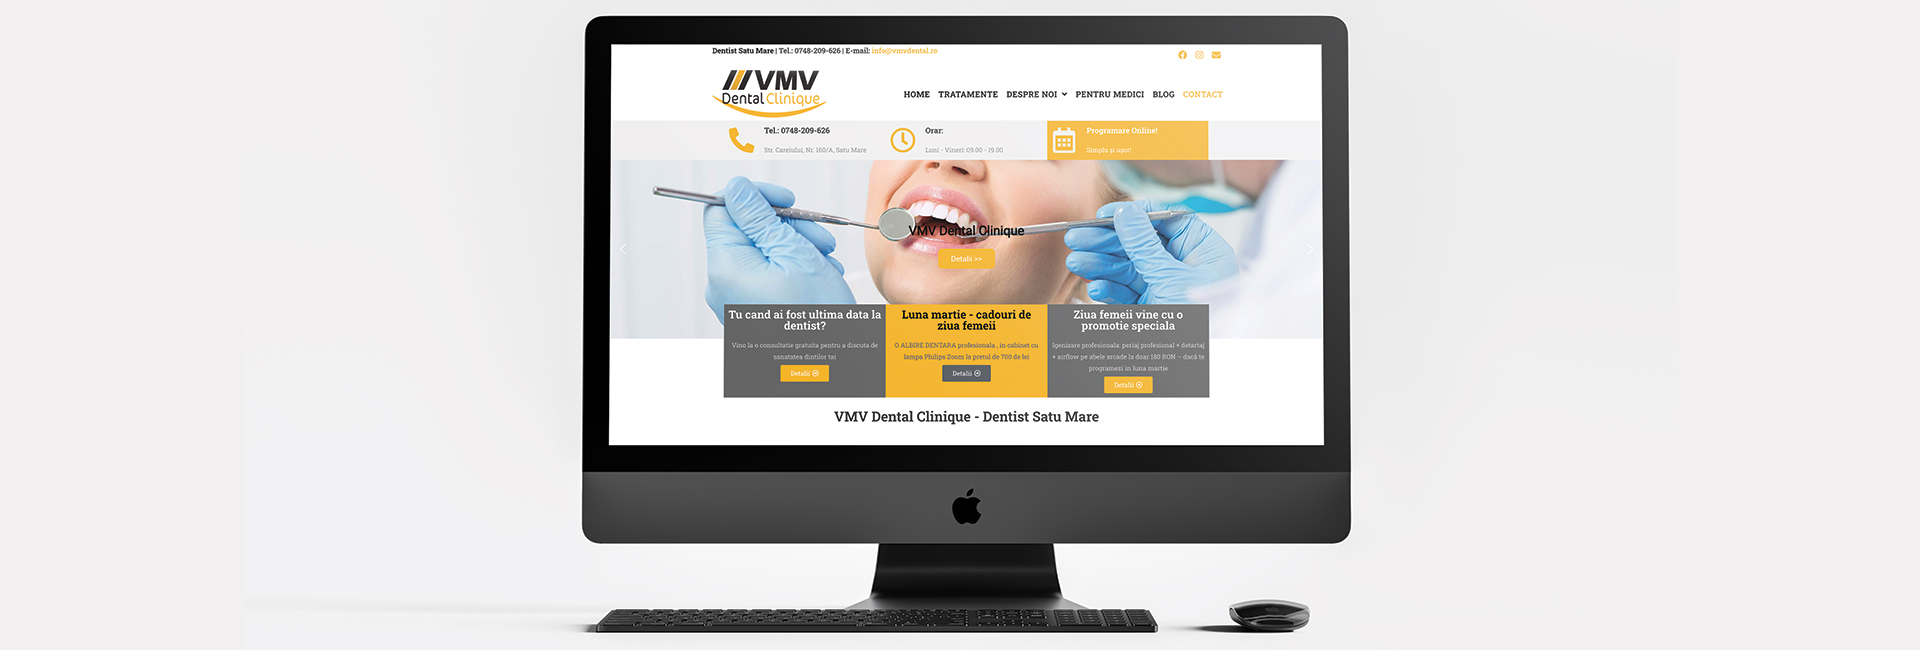 VBR-co-marketing-satu-mare-referinte-vmv-dental-2